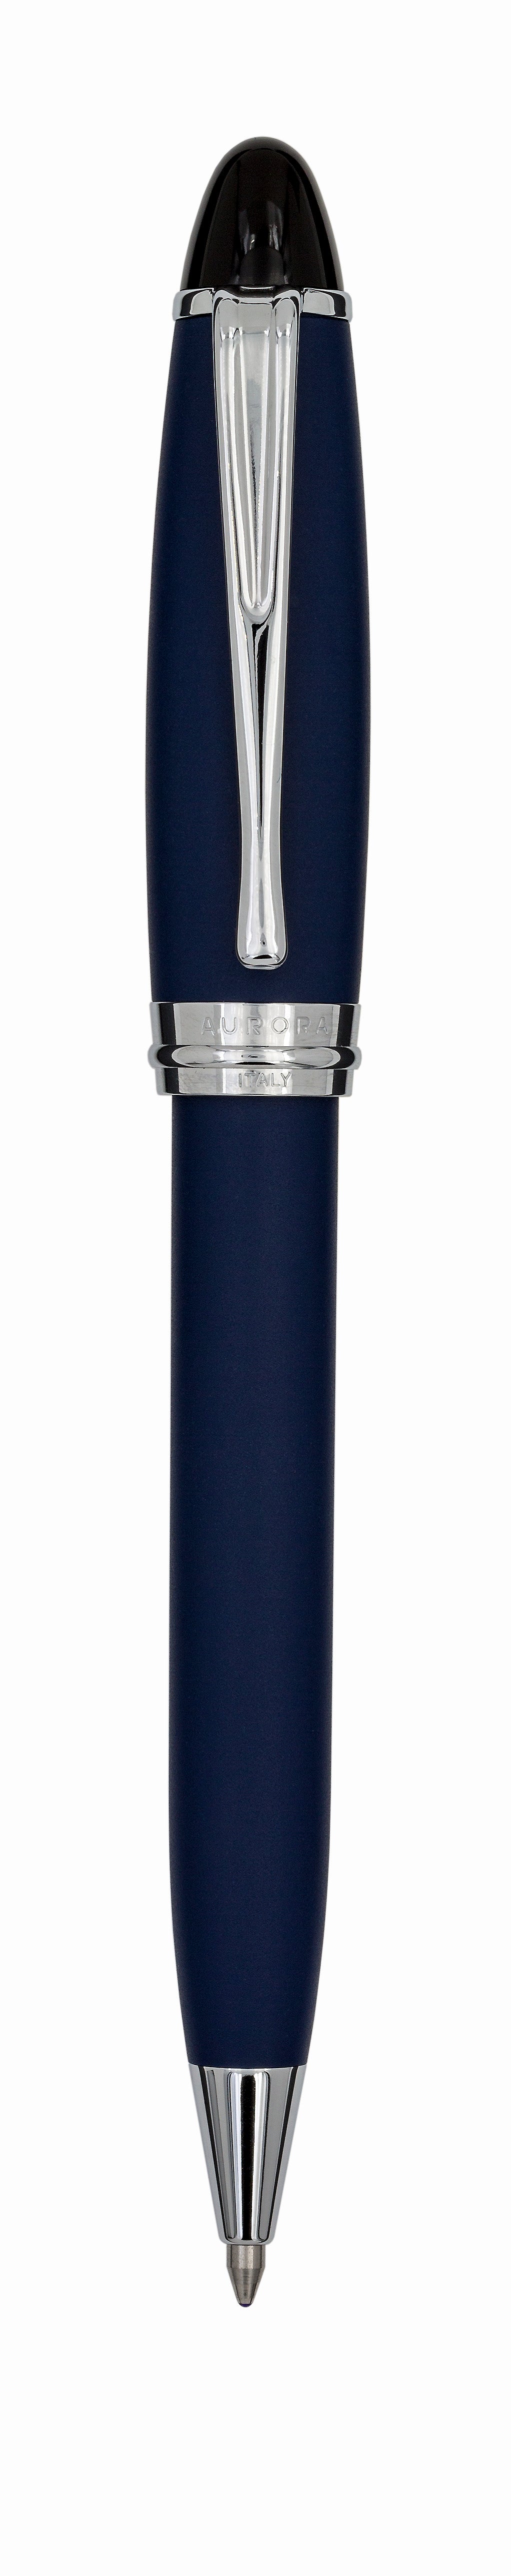 Aurora Ipsilon Satin Blue with Chrome Trims Ballpoint Pen